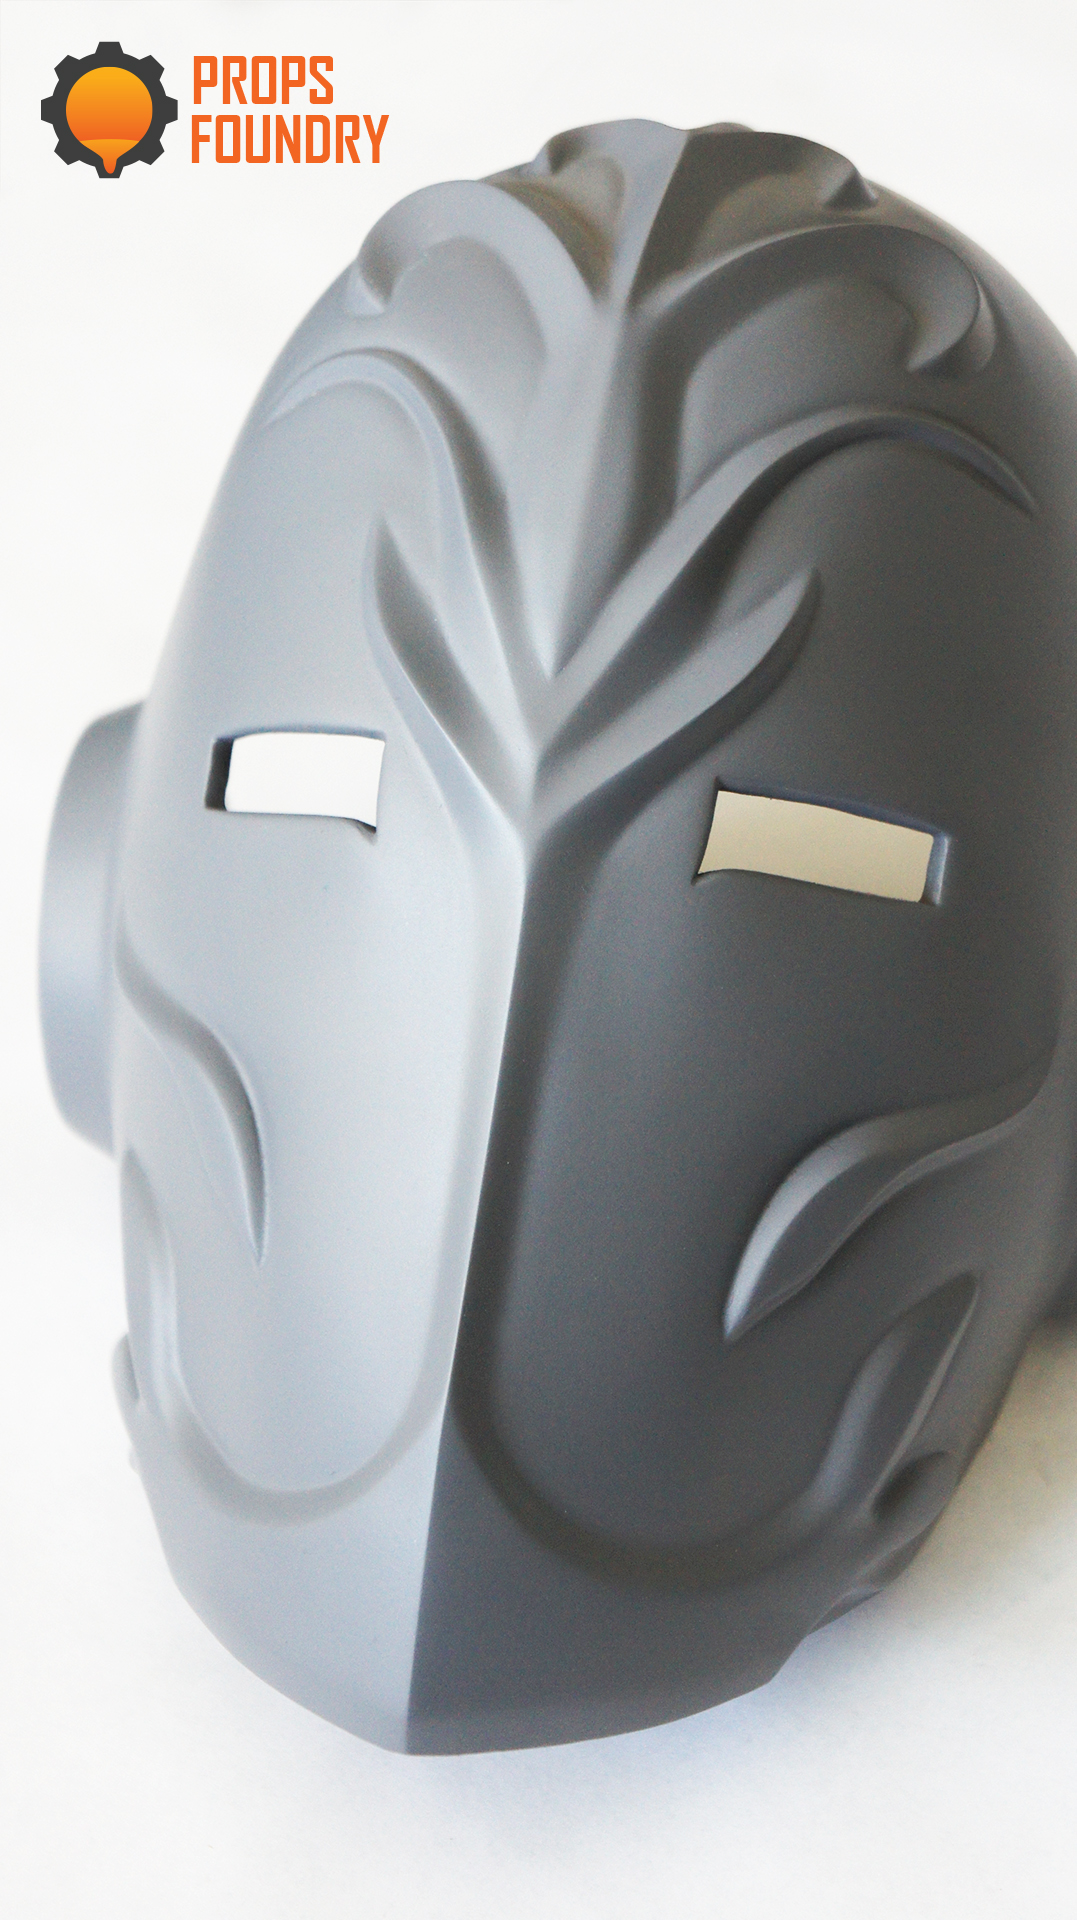 Jedi Temple Guard Mask Kit